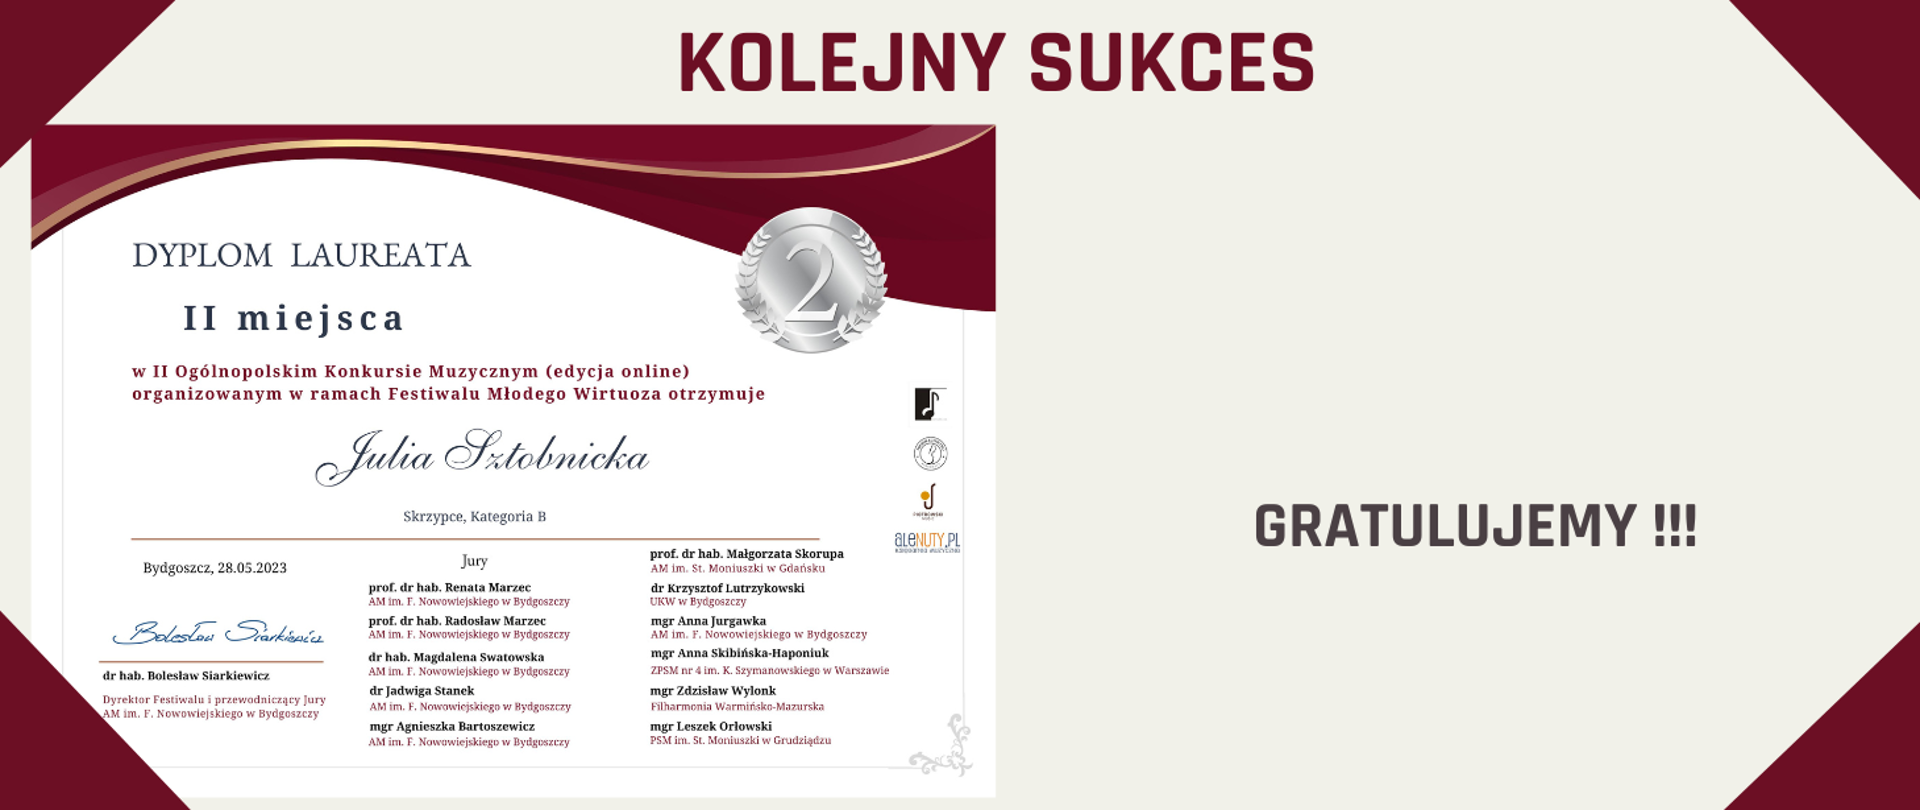 Po lewej stronie zamieszczone jest dyplom Julii Sztobnickiej za zajęcie 2 miejsca. 